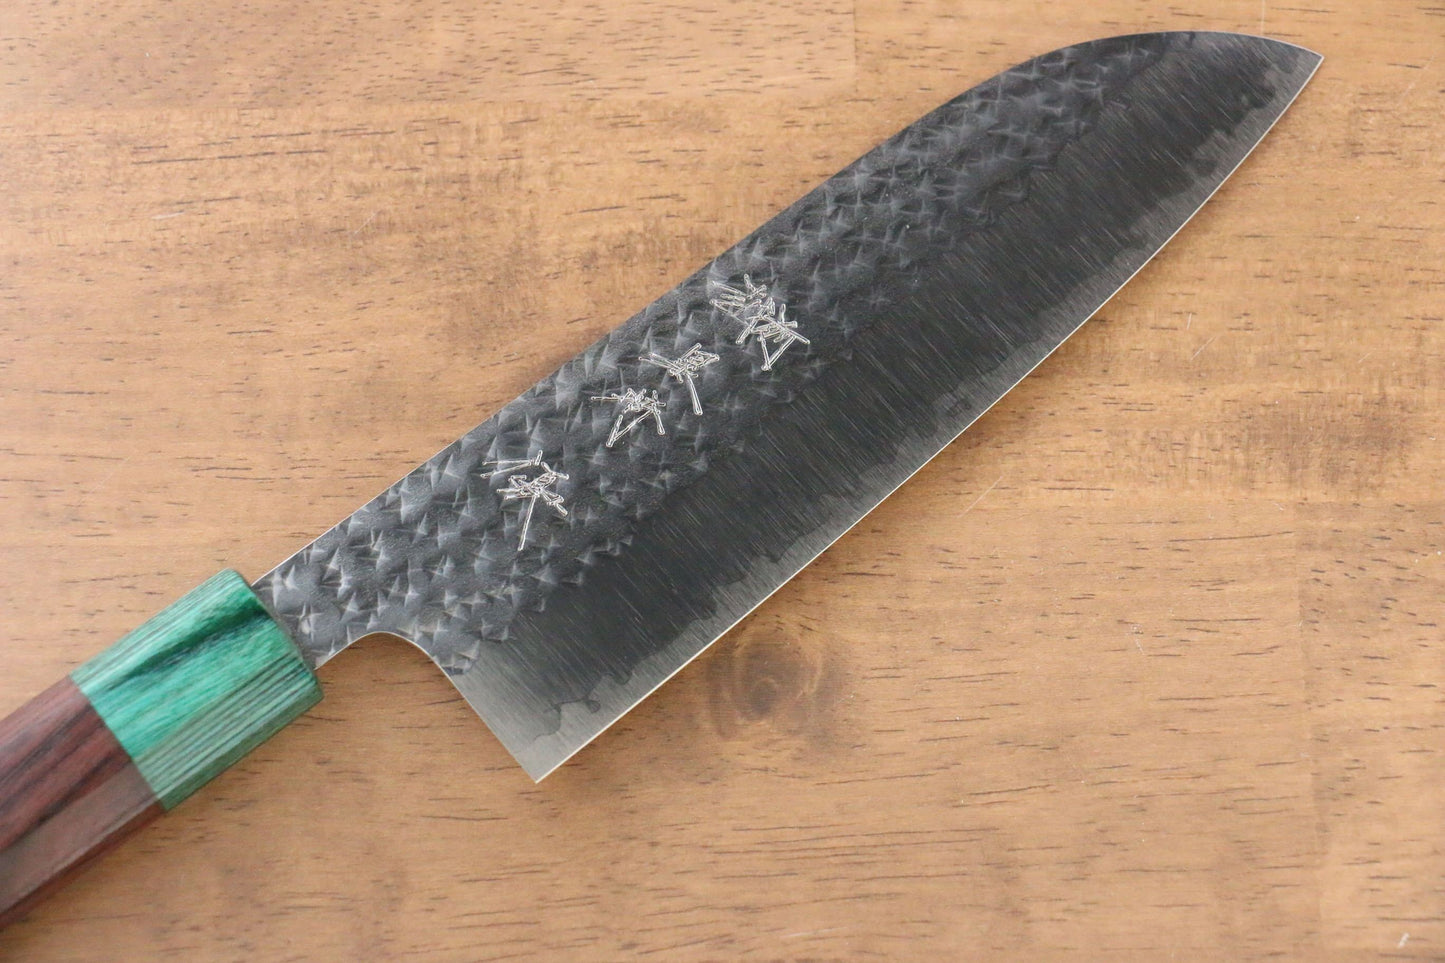 Yu Kurosaki Senko R2/SG2 Hammered Santoku Japanese Knife 165mm Shitan Handle - Japanny - Best Japanese Knife